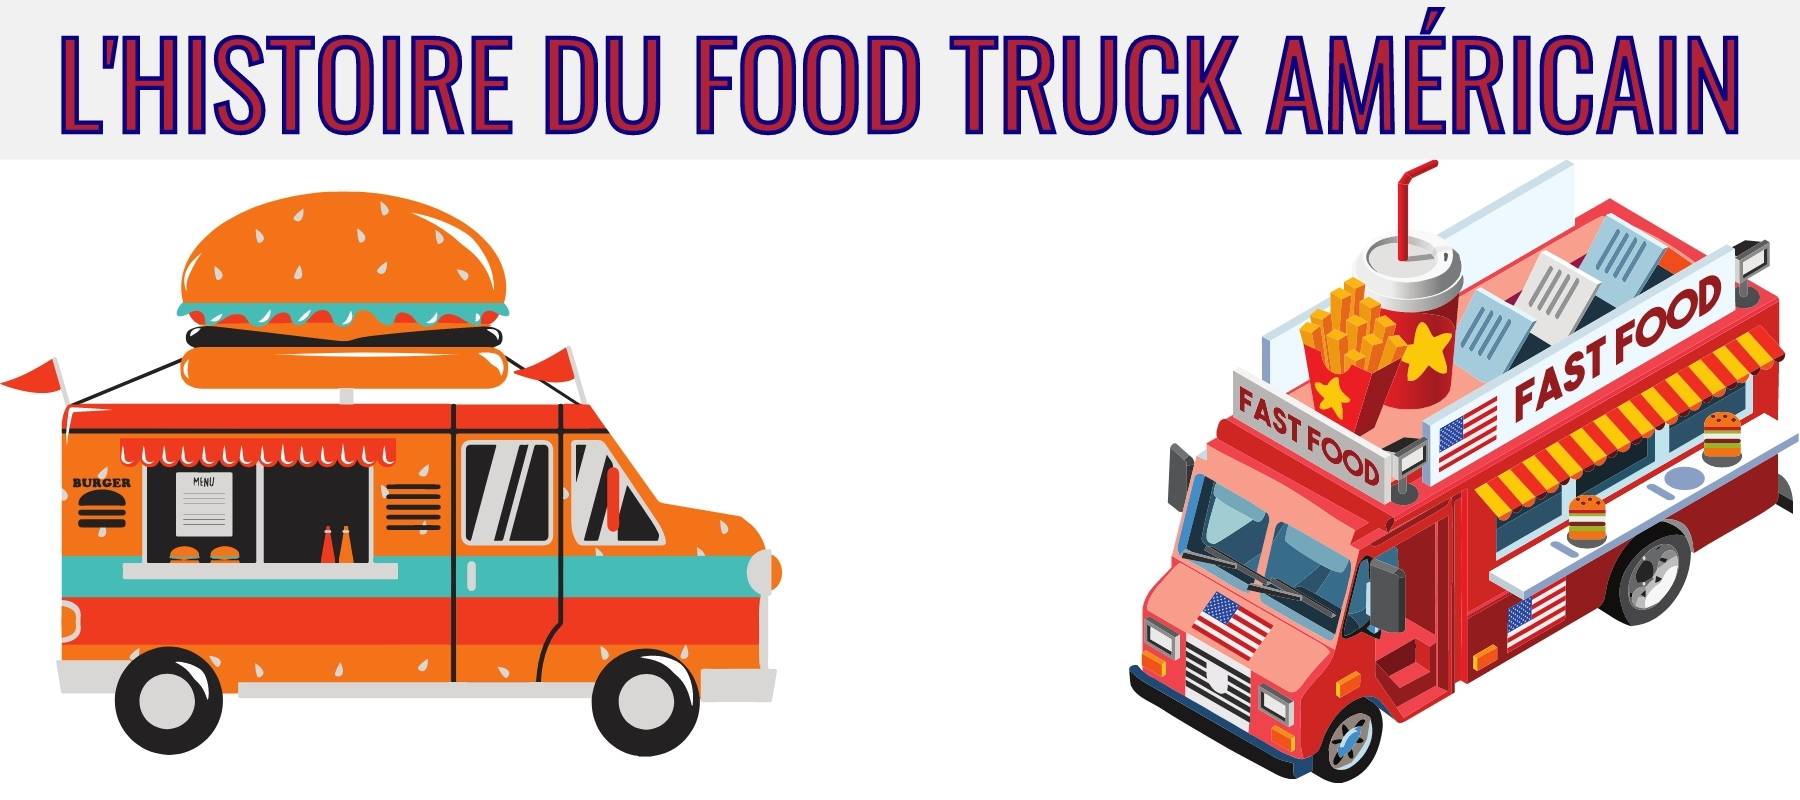 L'histoire du Food Truck Américain